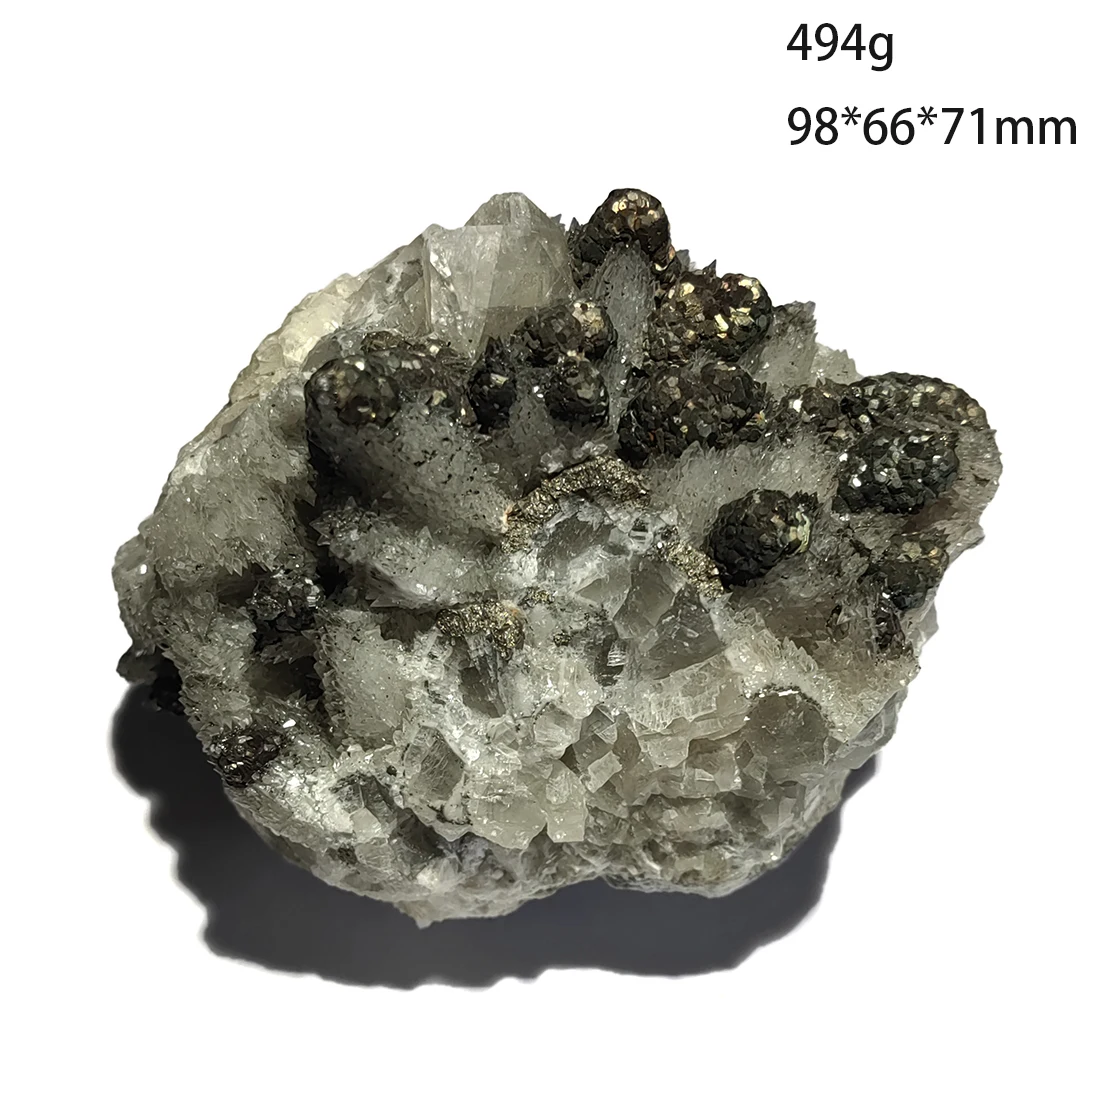 C6-10B НОВ! 100% Натурален проба минерален кристал на ада-калцит От ПРОВИНЦИЯ Дзянси, КИТАЙ Изображение 0